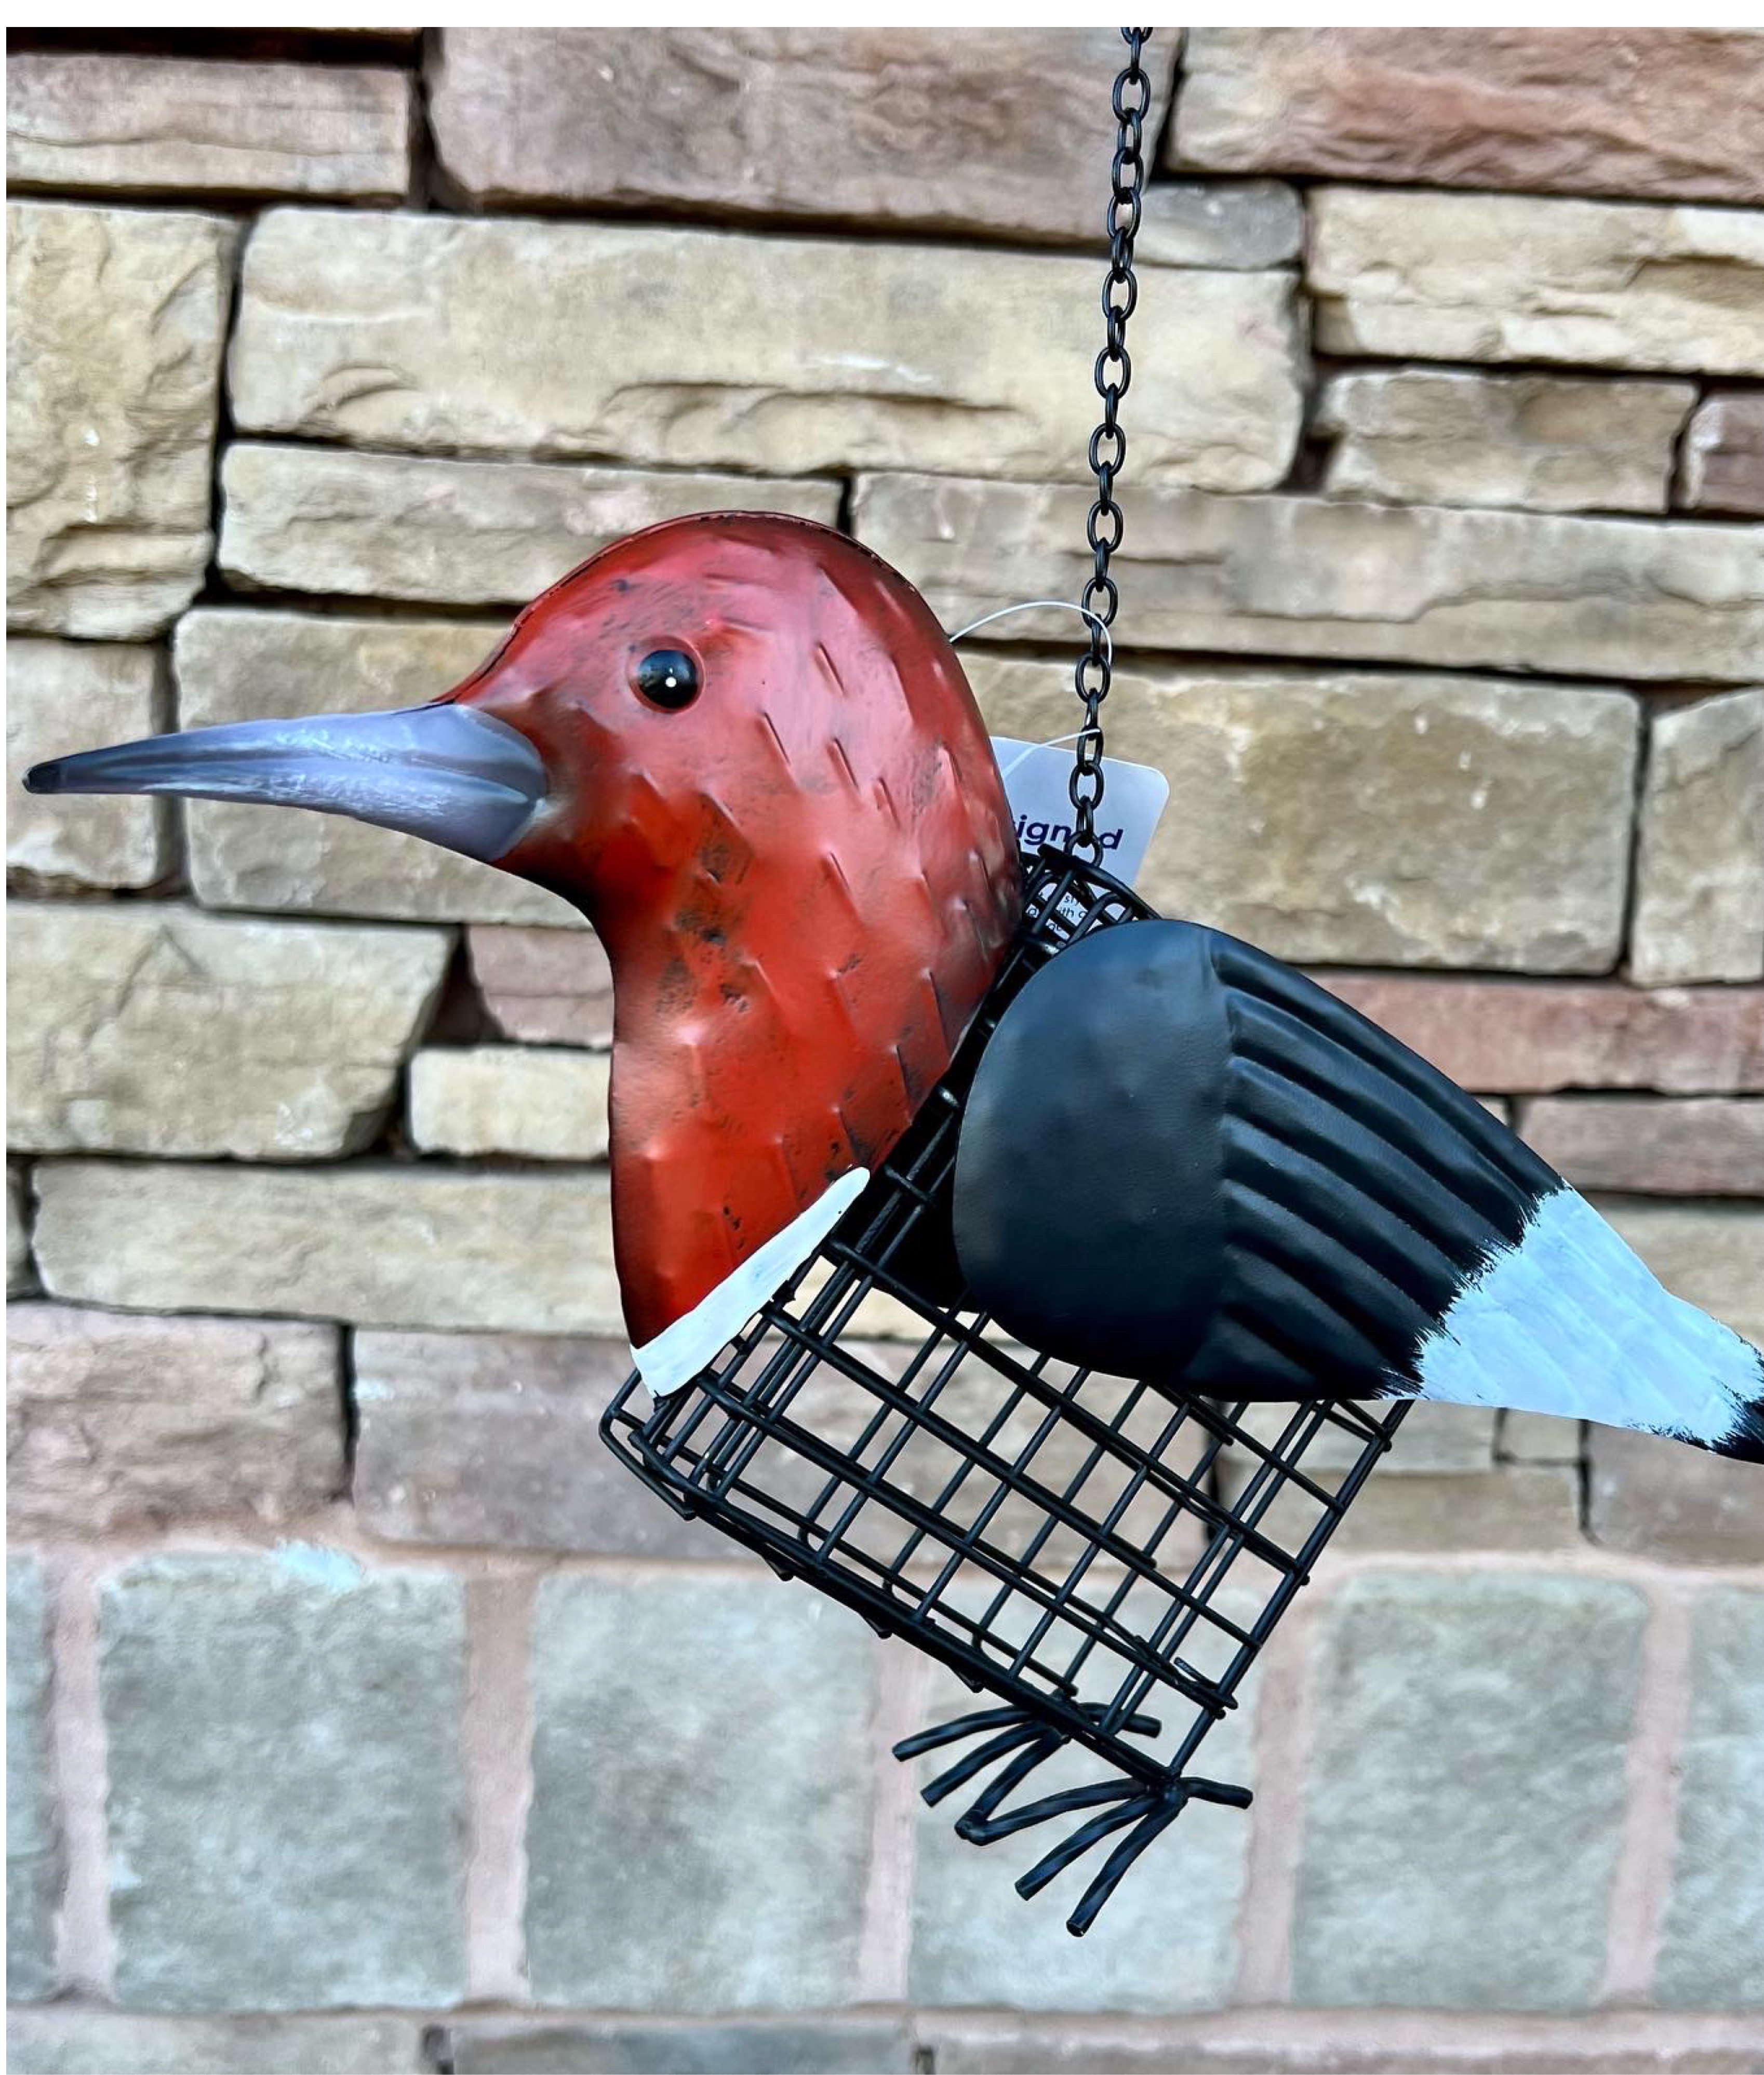 suet, suet feeder, decorative feeder, bird feeding